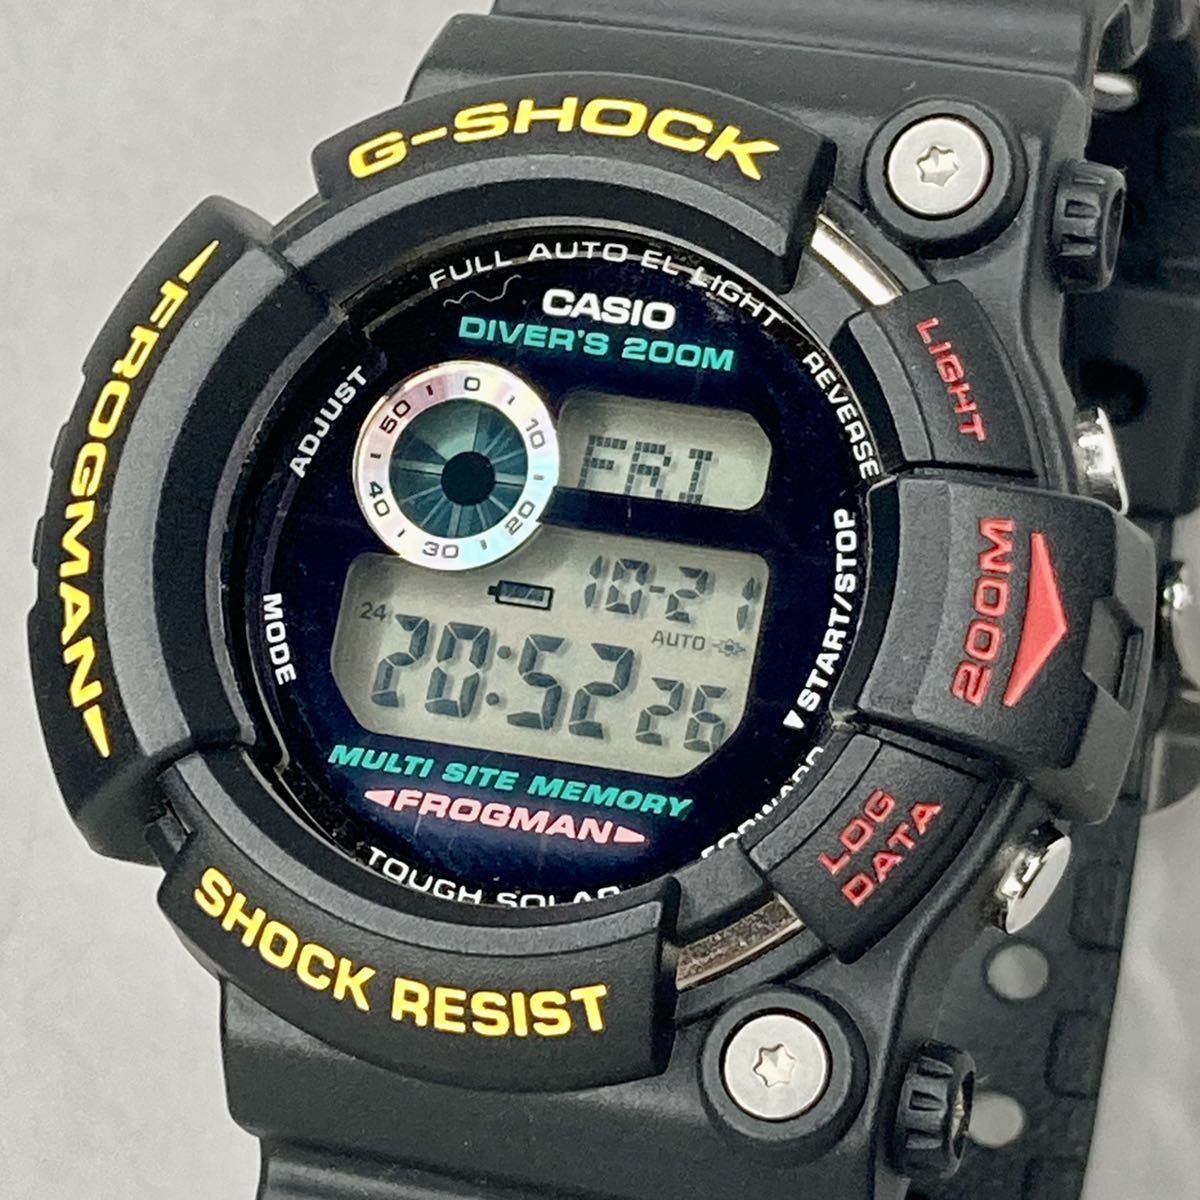 ヤフオク! -「g shock gw 200」(FROGMAN) (G-SHOCK)の落札相場・落札価格